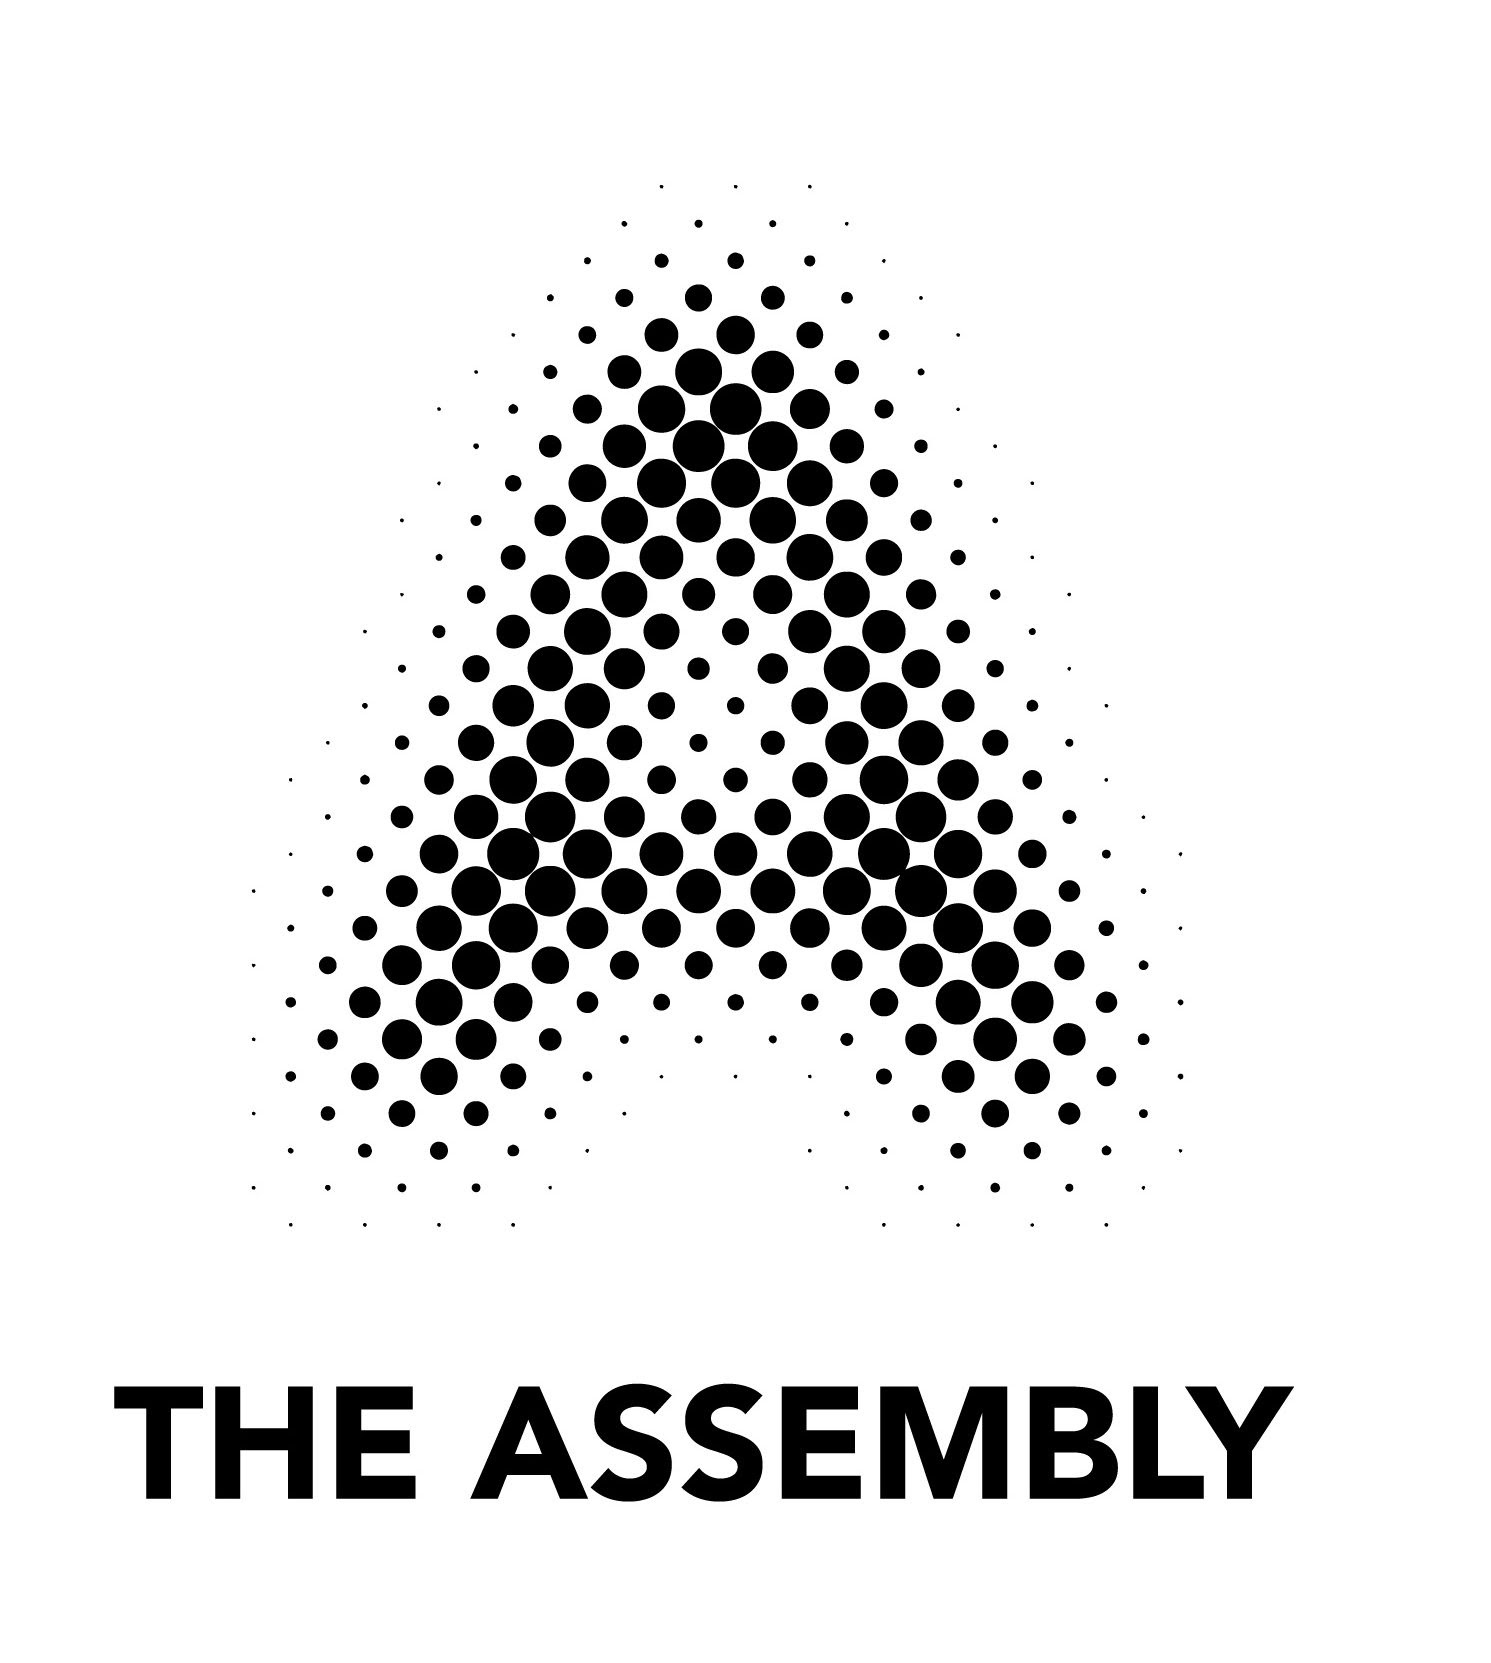 The Assembly Innovation Hub Ltd